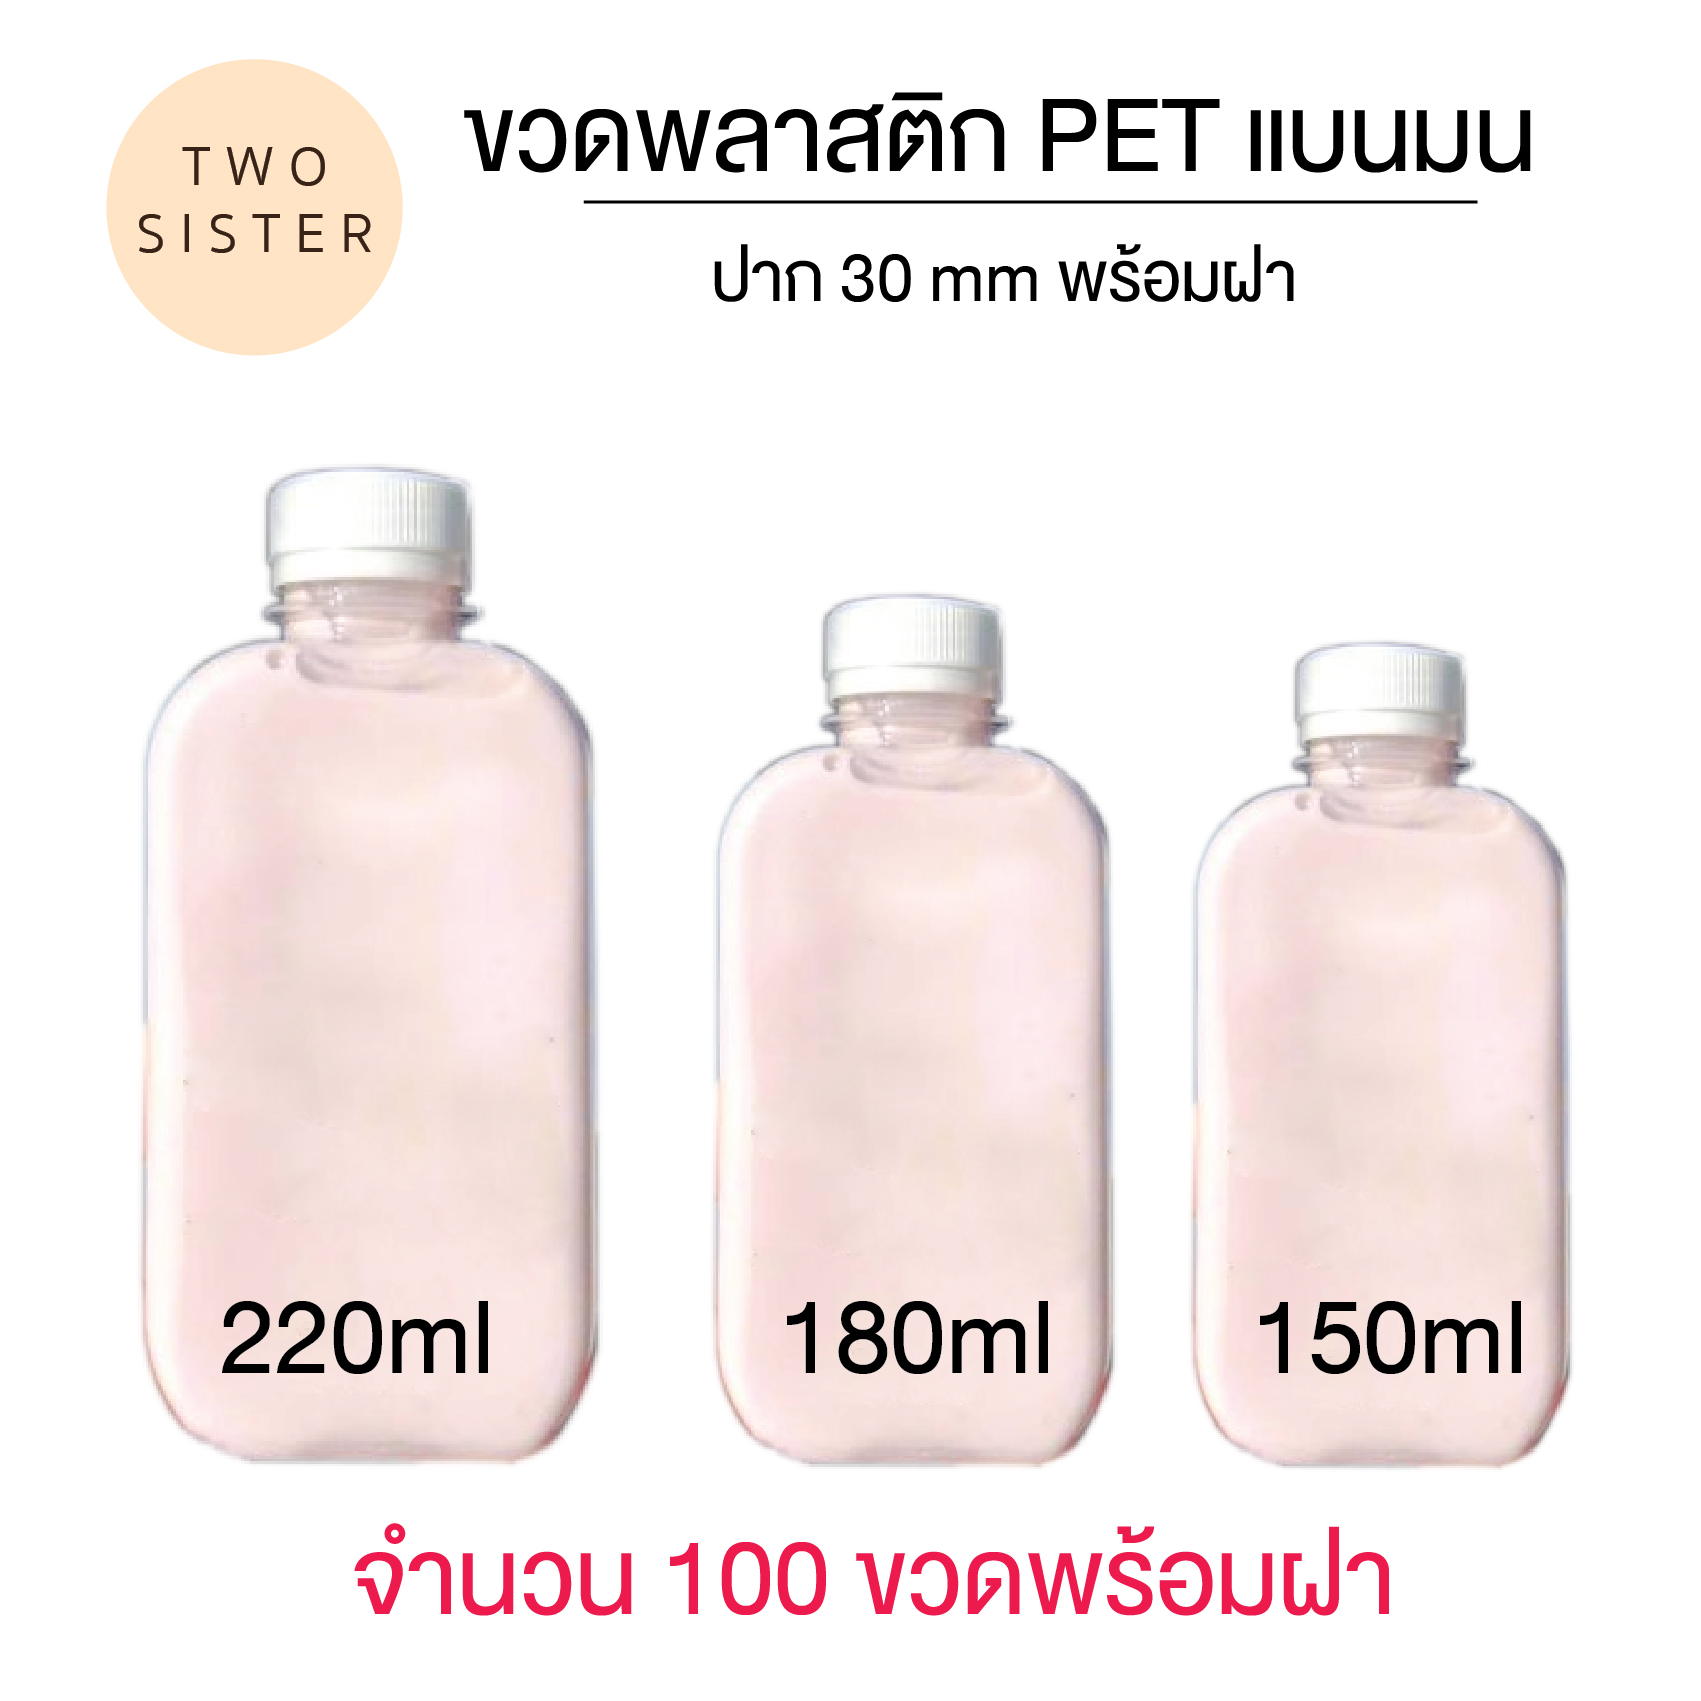 ขวดพลาสติก PETแบนมน  ขวดพลาสติกทรงแบนมน ขนาด 150 ml แพ็ค 100 ใบ